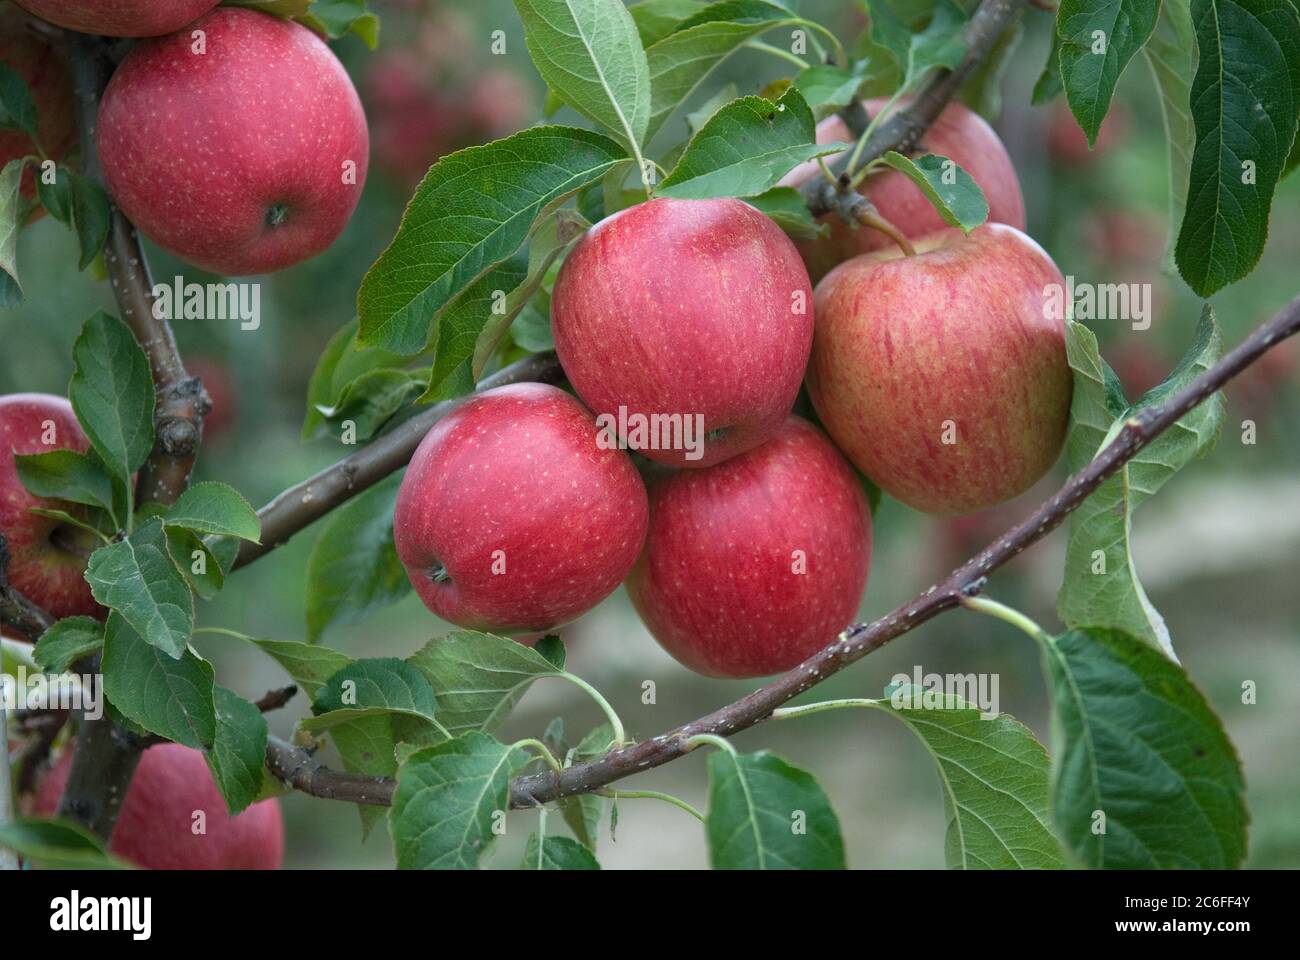 Apfel, Malus domestica EVELINA, Apple, Malus domestica EVELINA Stock Photo